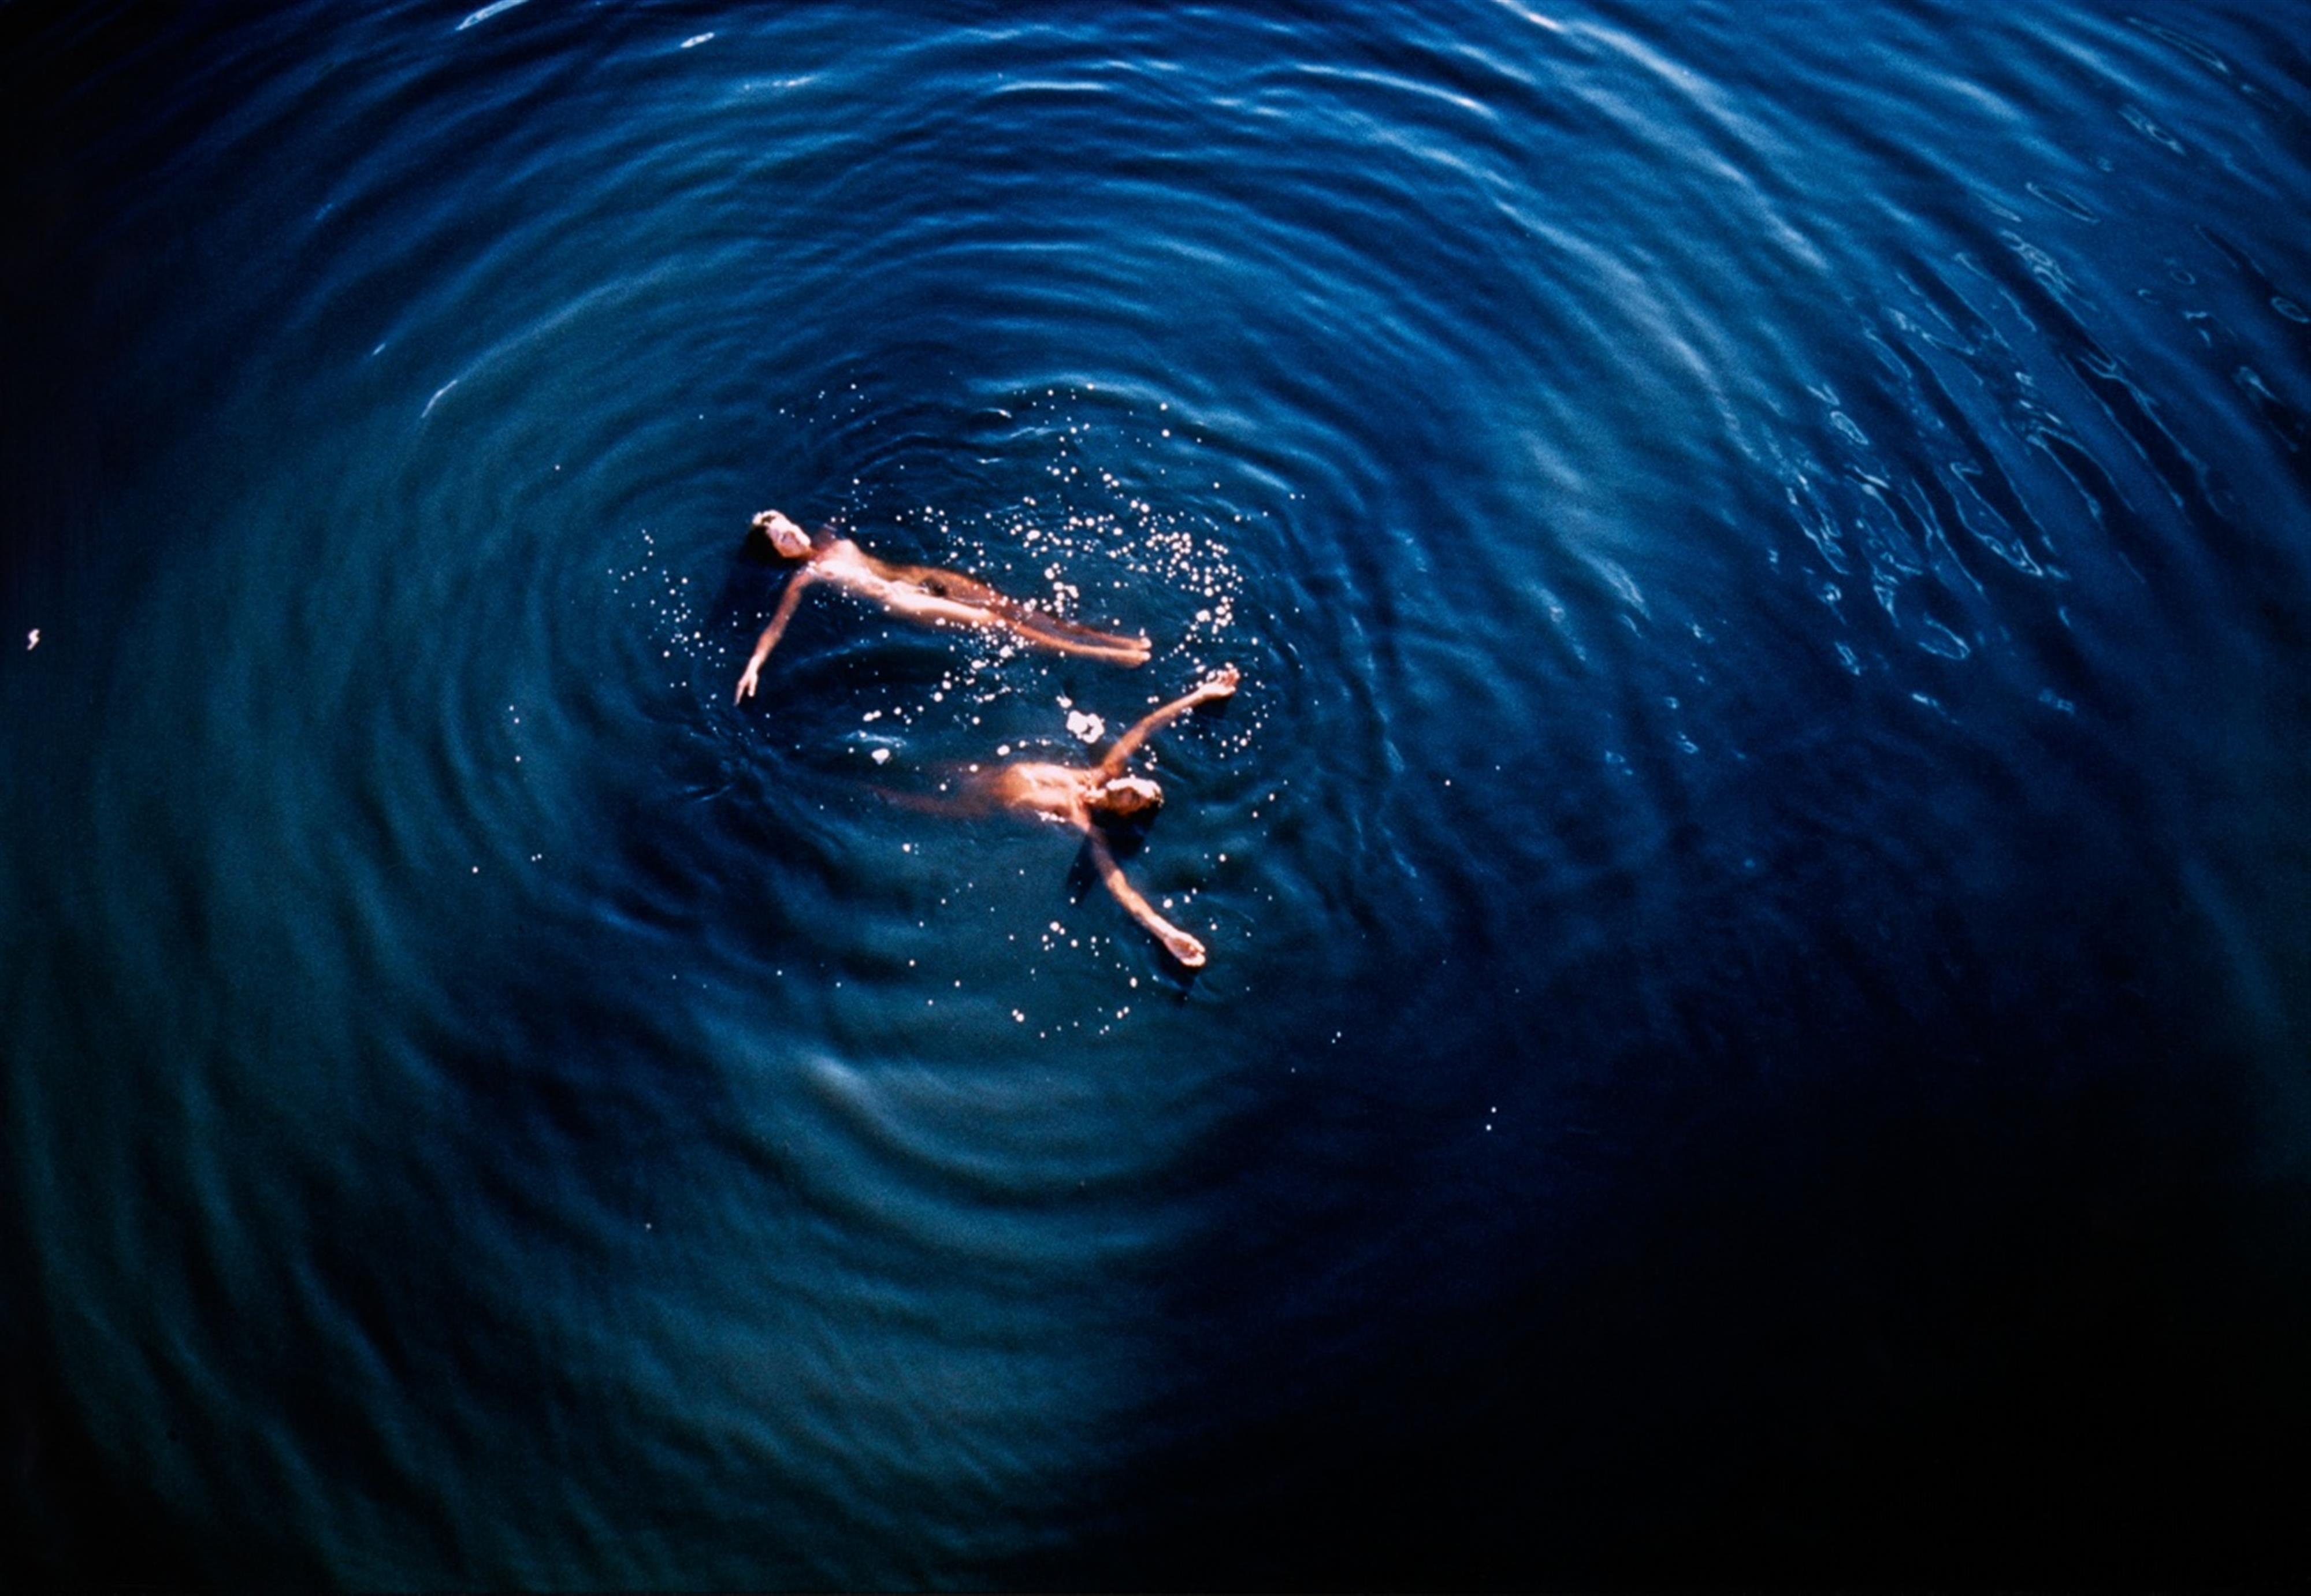 Marina Abramovic
Ulay - Floating (Australia) - image-1